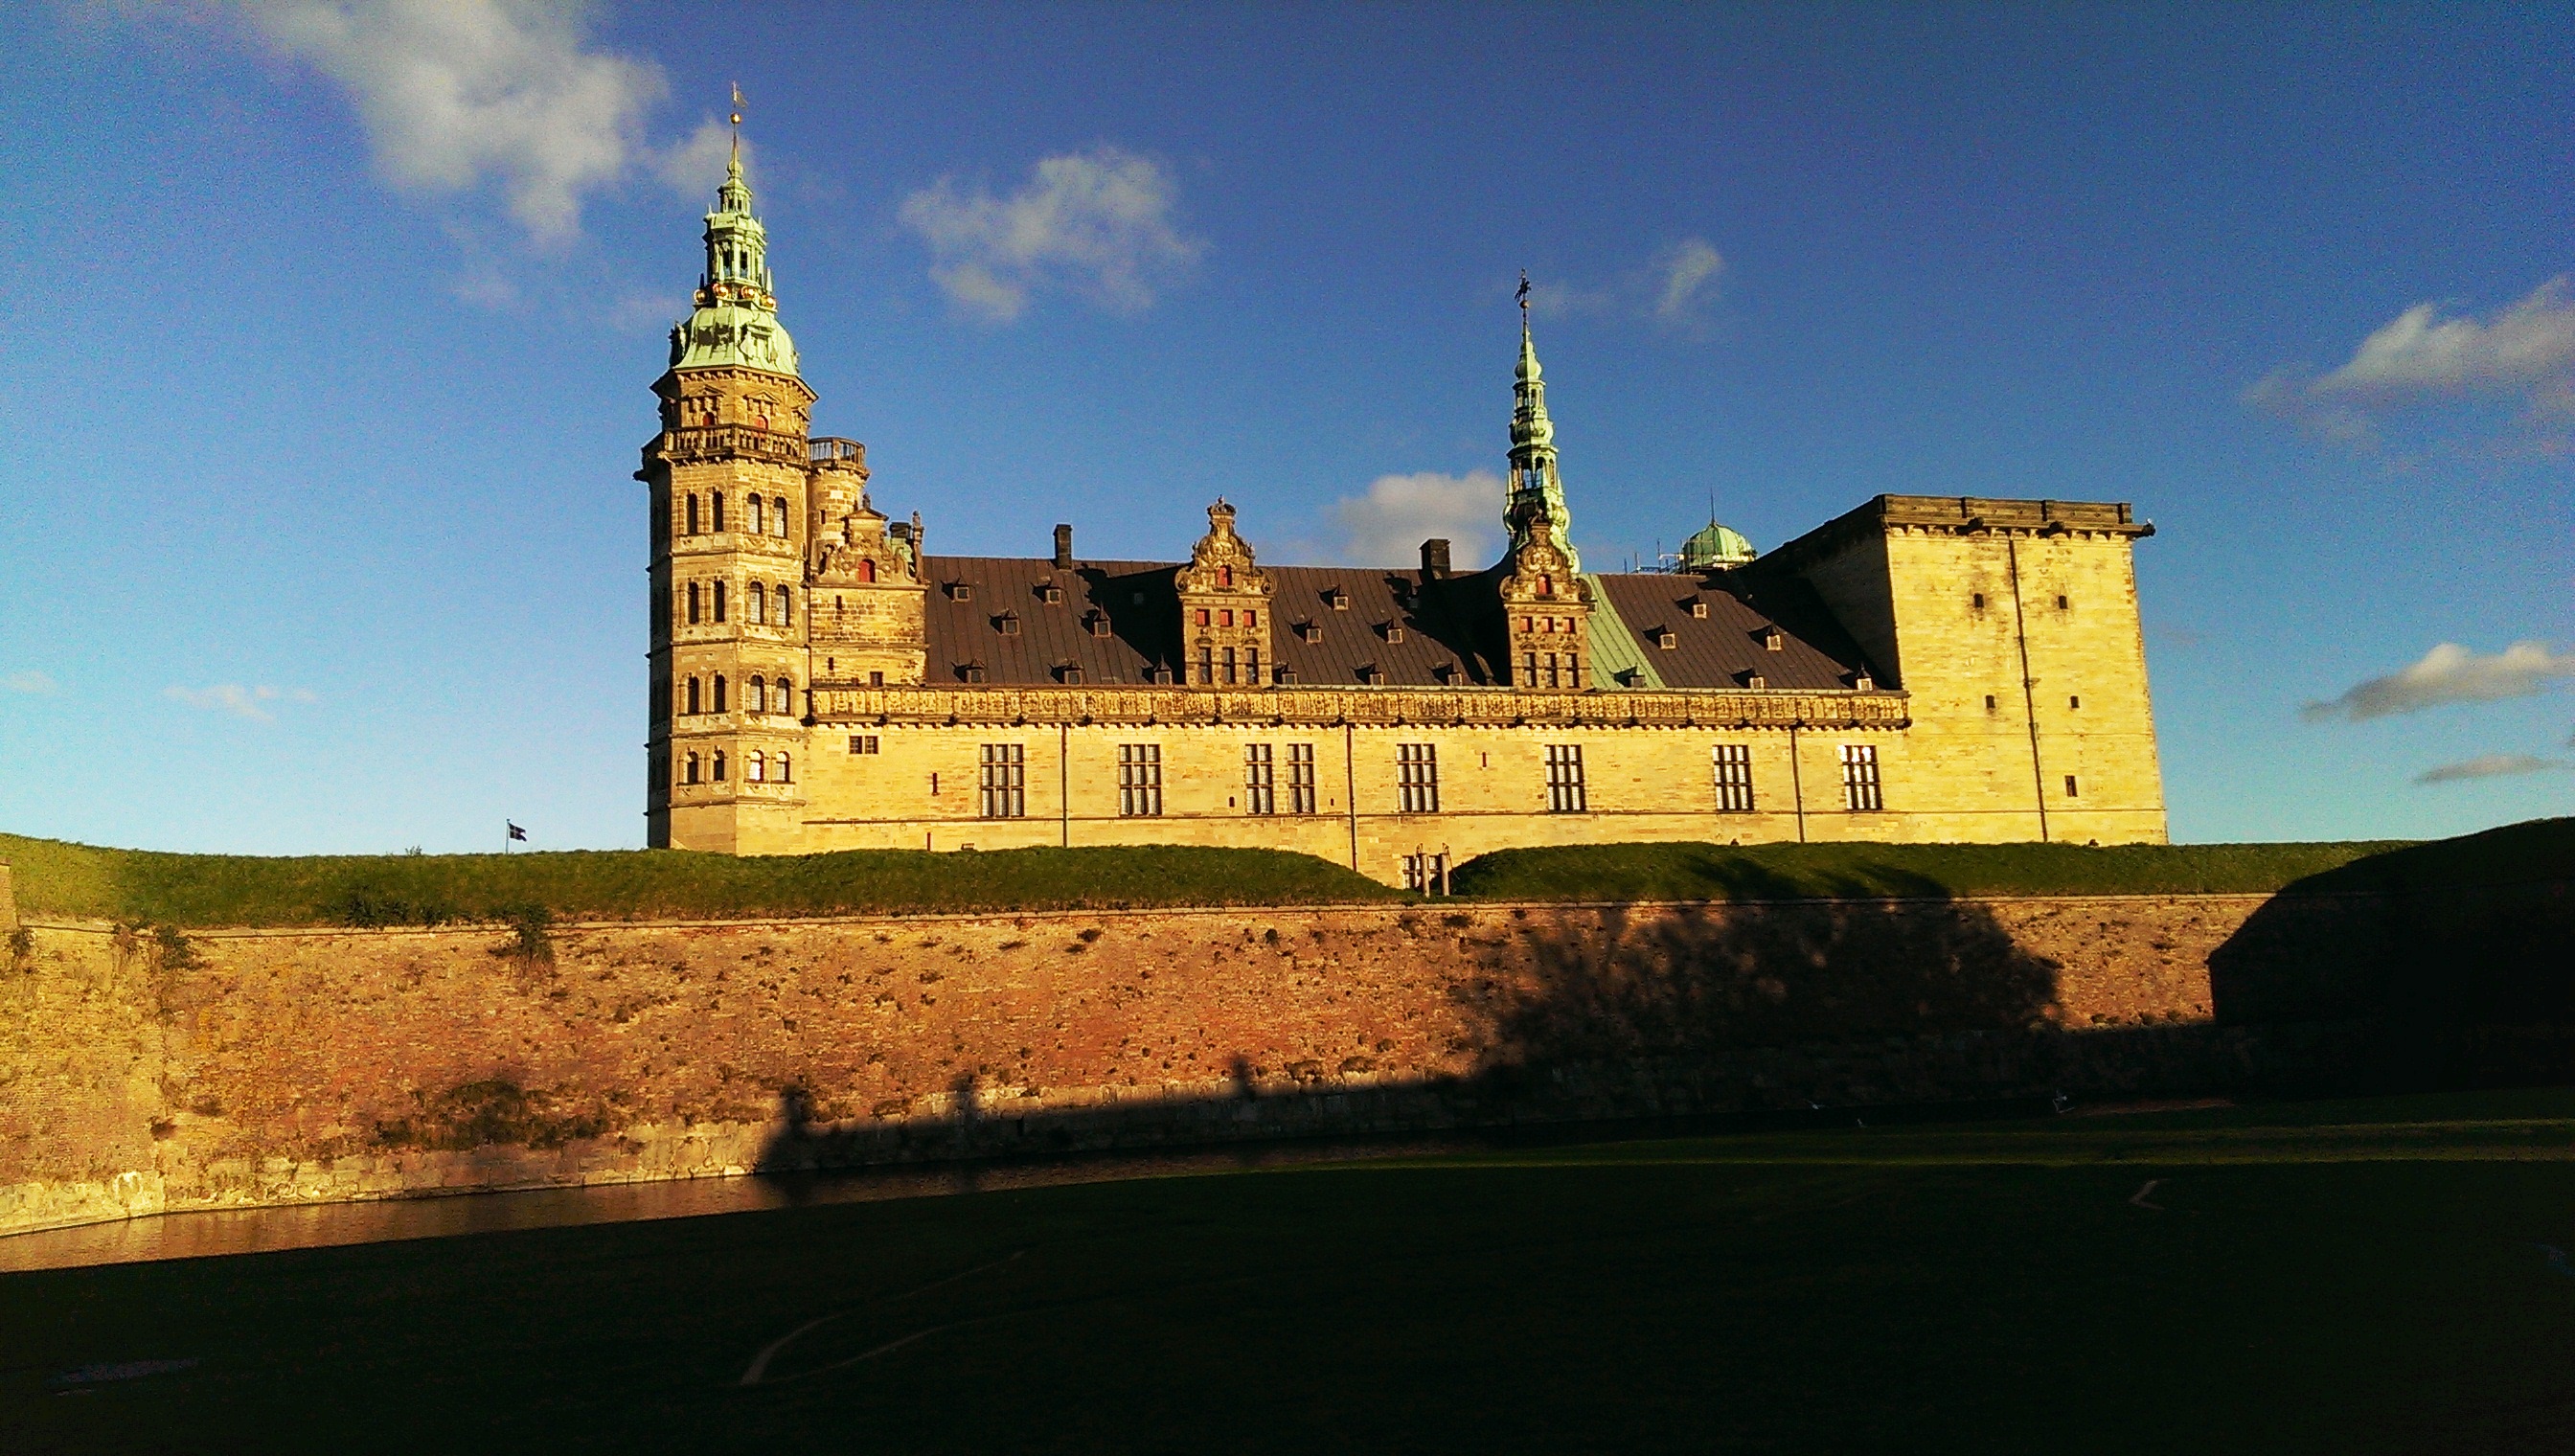 Kronborg – vizitează castelul lui Hamlet